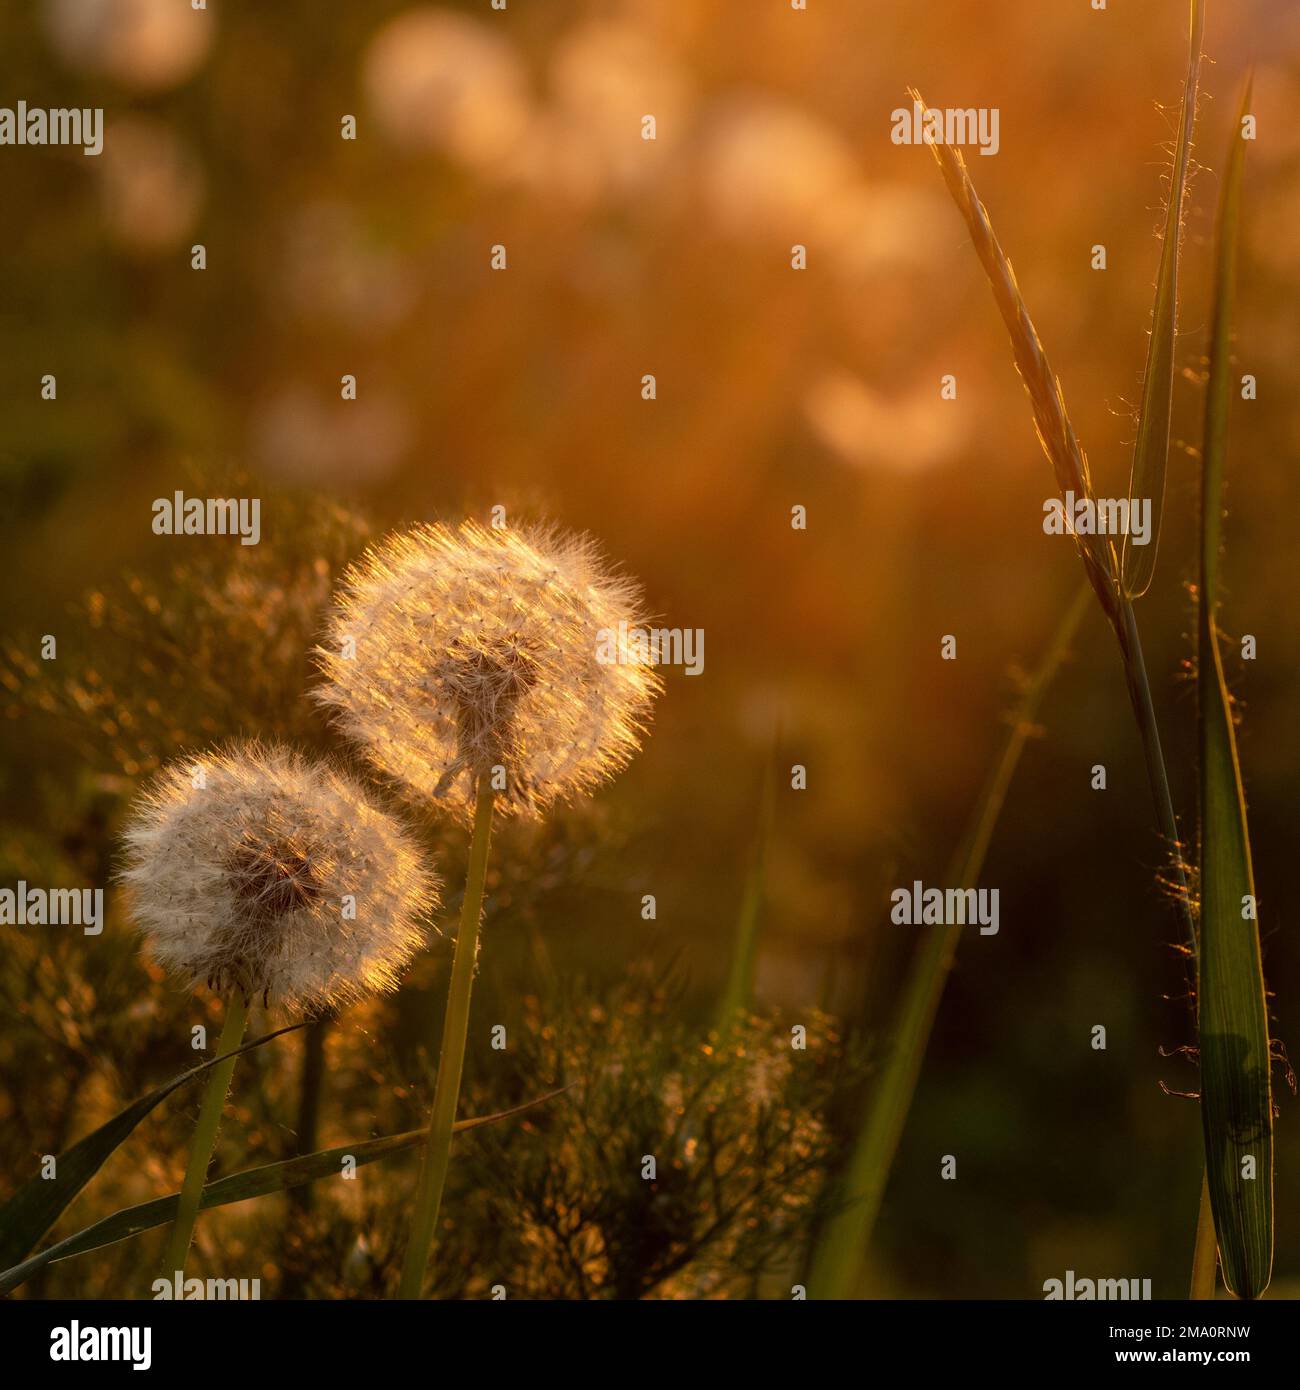 Deux pissenlits ronds lumineux et moelleux dans l'herbe éclairée par le soleil couchant. Concept d'ambiance d'été. Le concept de liberté, rêves d'avenir, tranquilli Banque D'Images